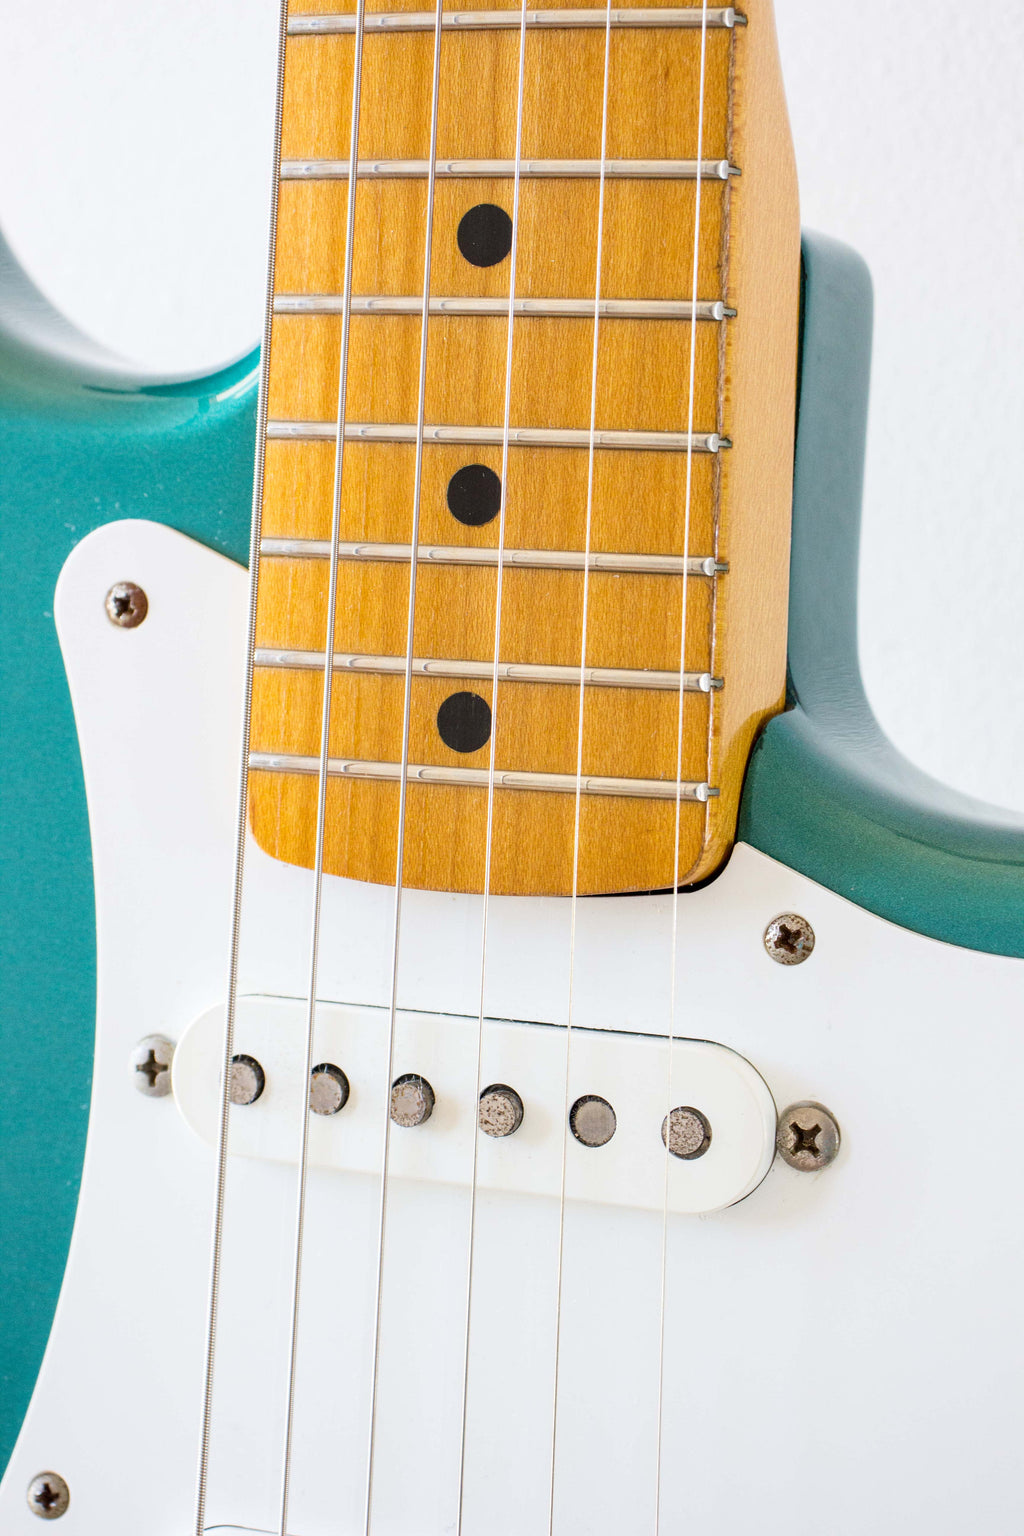 Fender Japan '57 Reissue Stratocaster ST57-70TX Ocean Turquoise Metallic 1997-00